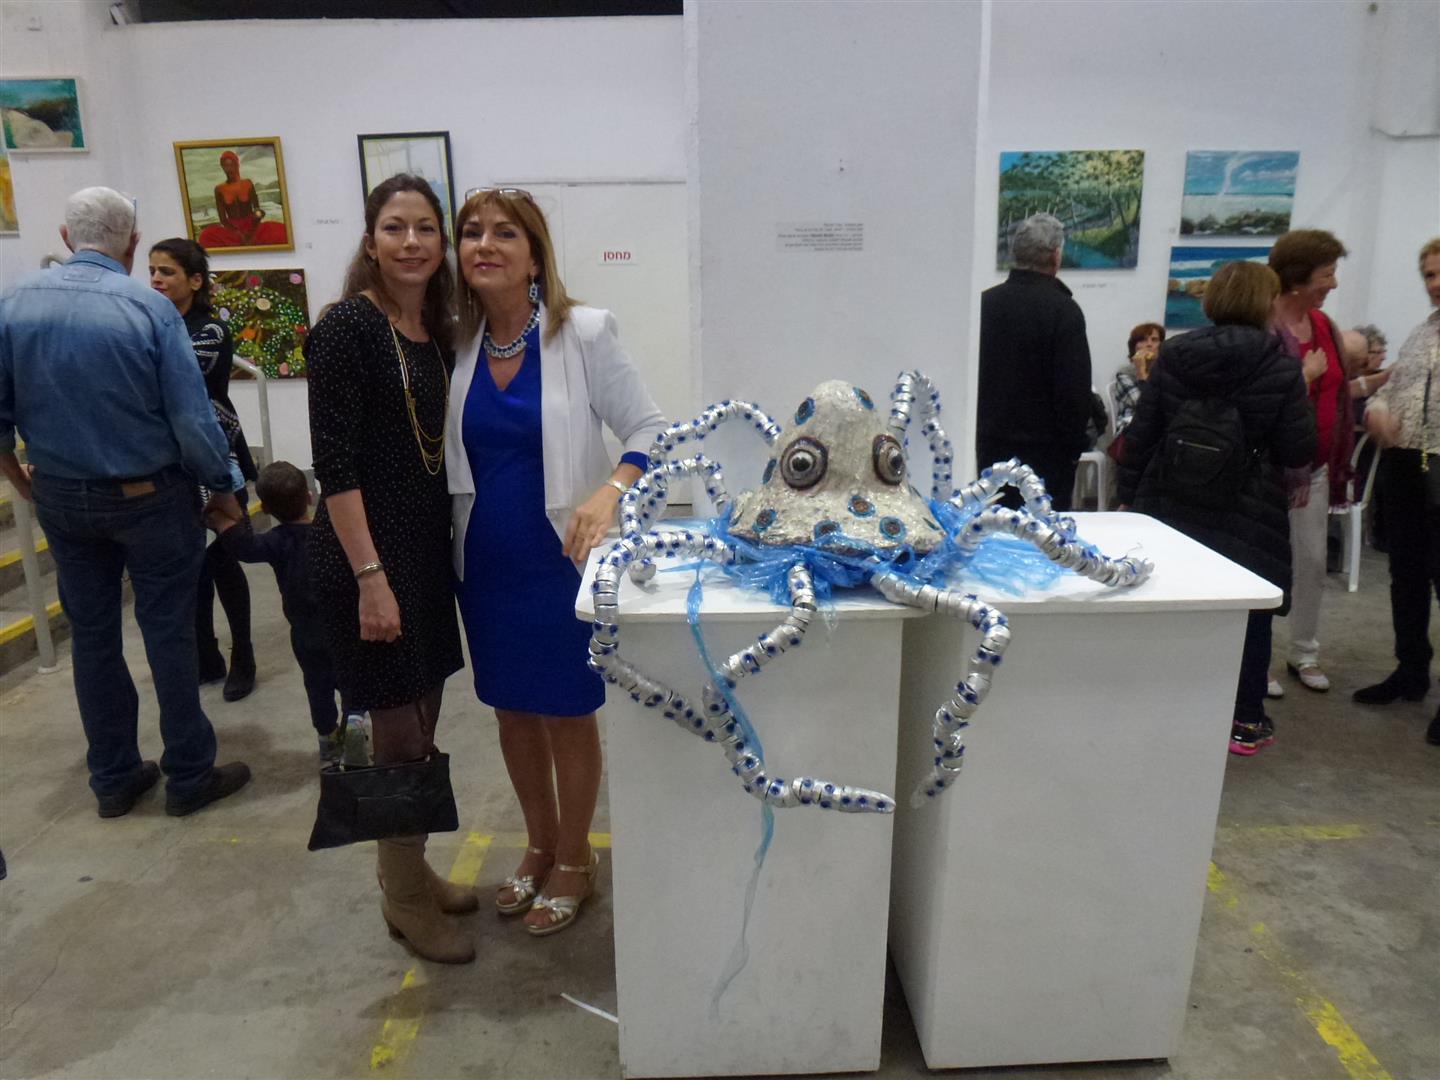 עם ביתי ליטל ישראלי  האהובה באירוע הפתיחה לתערוכה אקטיבית - אביב 2017 במרכז עמיעד